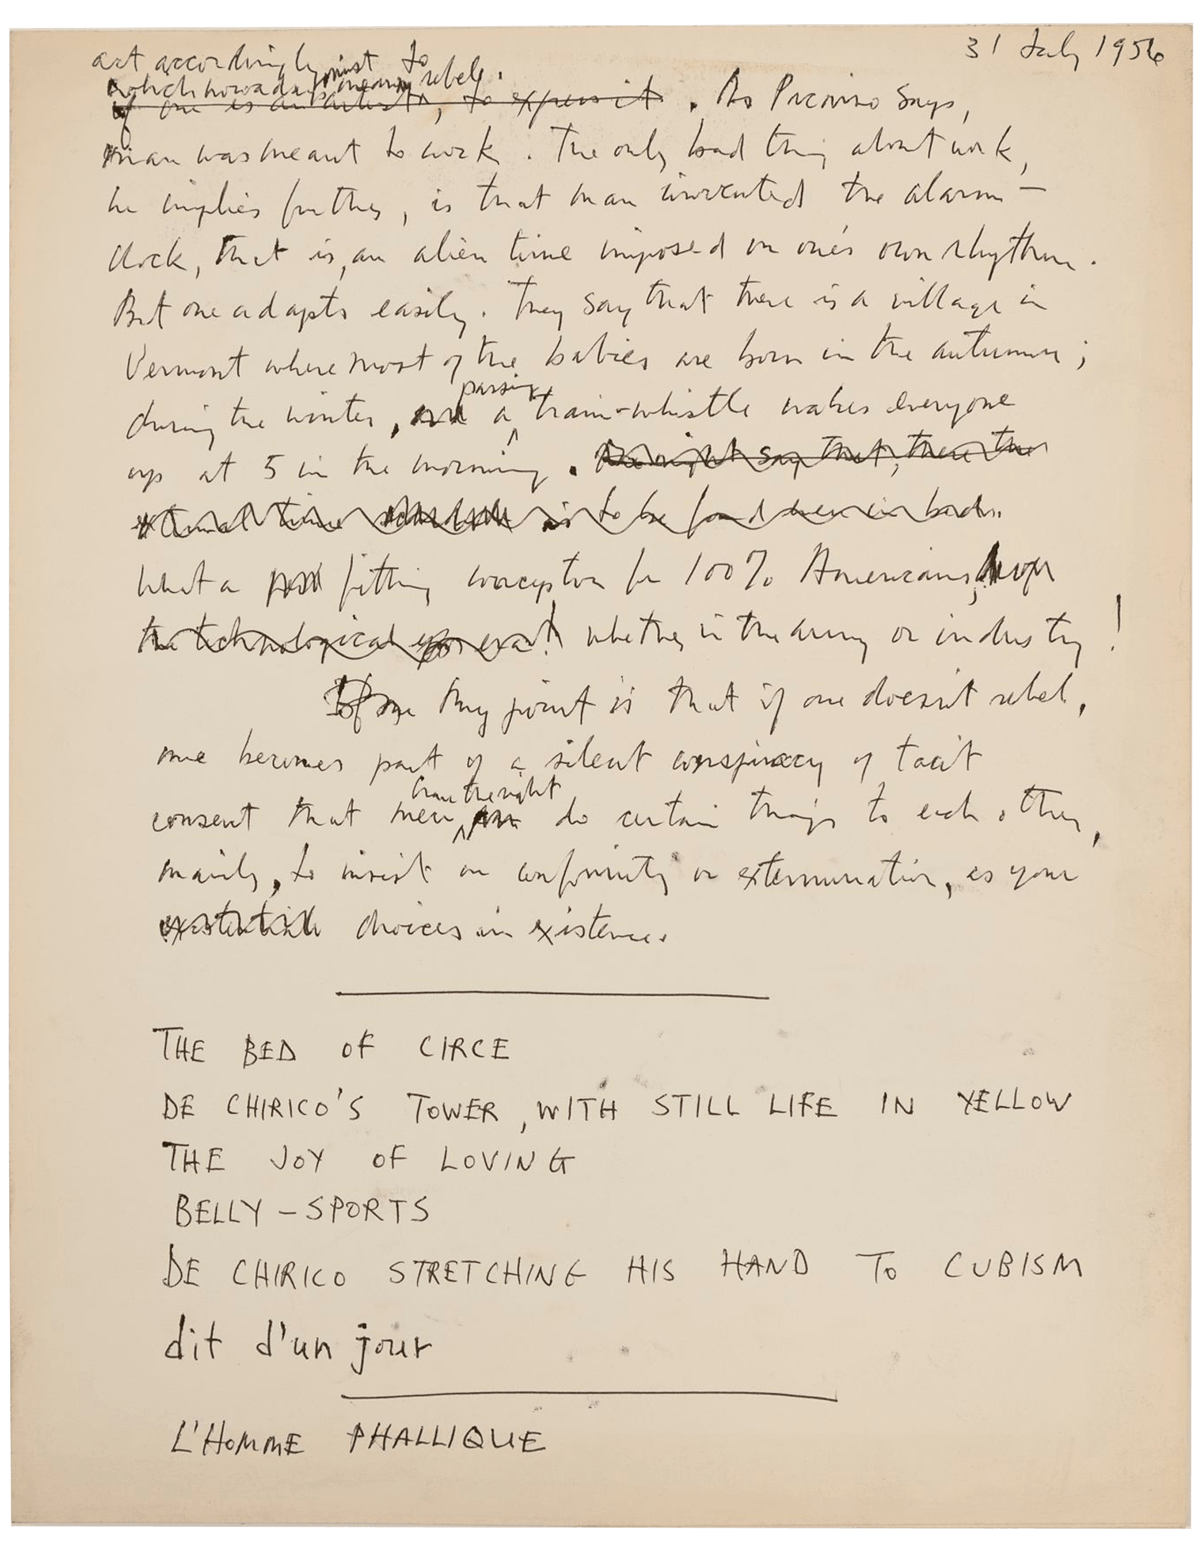 A handwritten manuscript from 1956